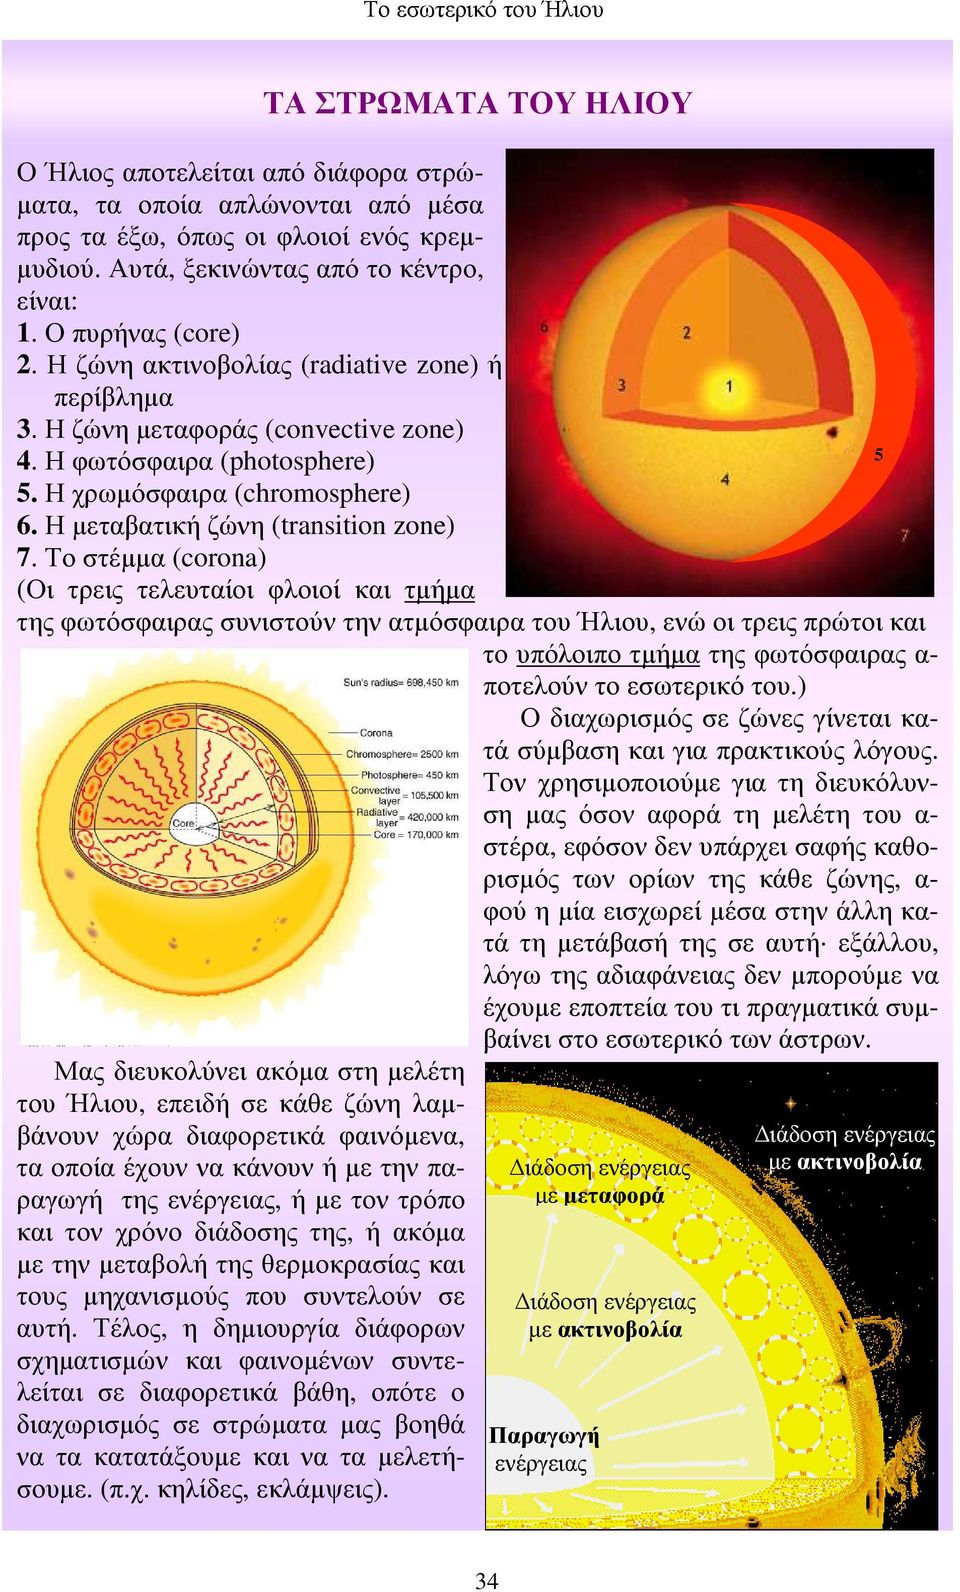 Το στέµµα (corona) (Οι τρεις τελευταίοι φλοιοί και τµήµα της φωτόσφαιρας συνιστούν την ατµόσφαιρα του Ήλιου, ενώ οι τρεις πρώτοι και το υπόλοιπο τµήµα της φωτόσφαιρας α- ποτελούν το εσωτερικό του.